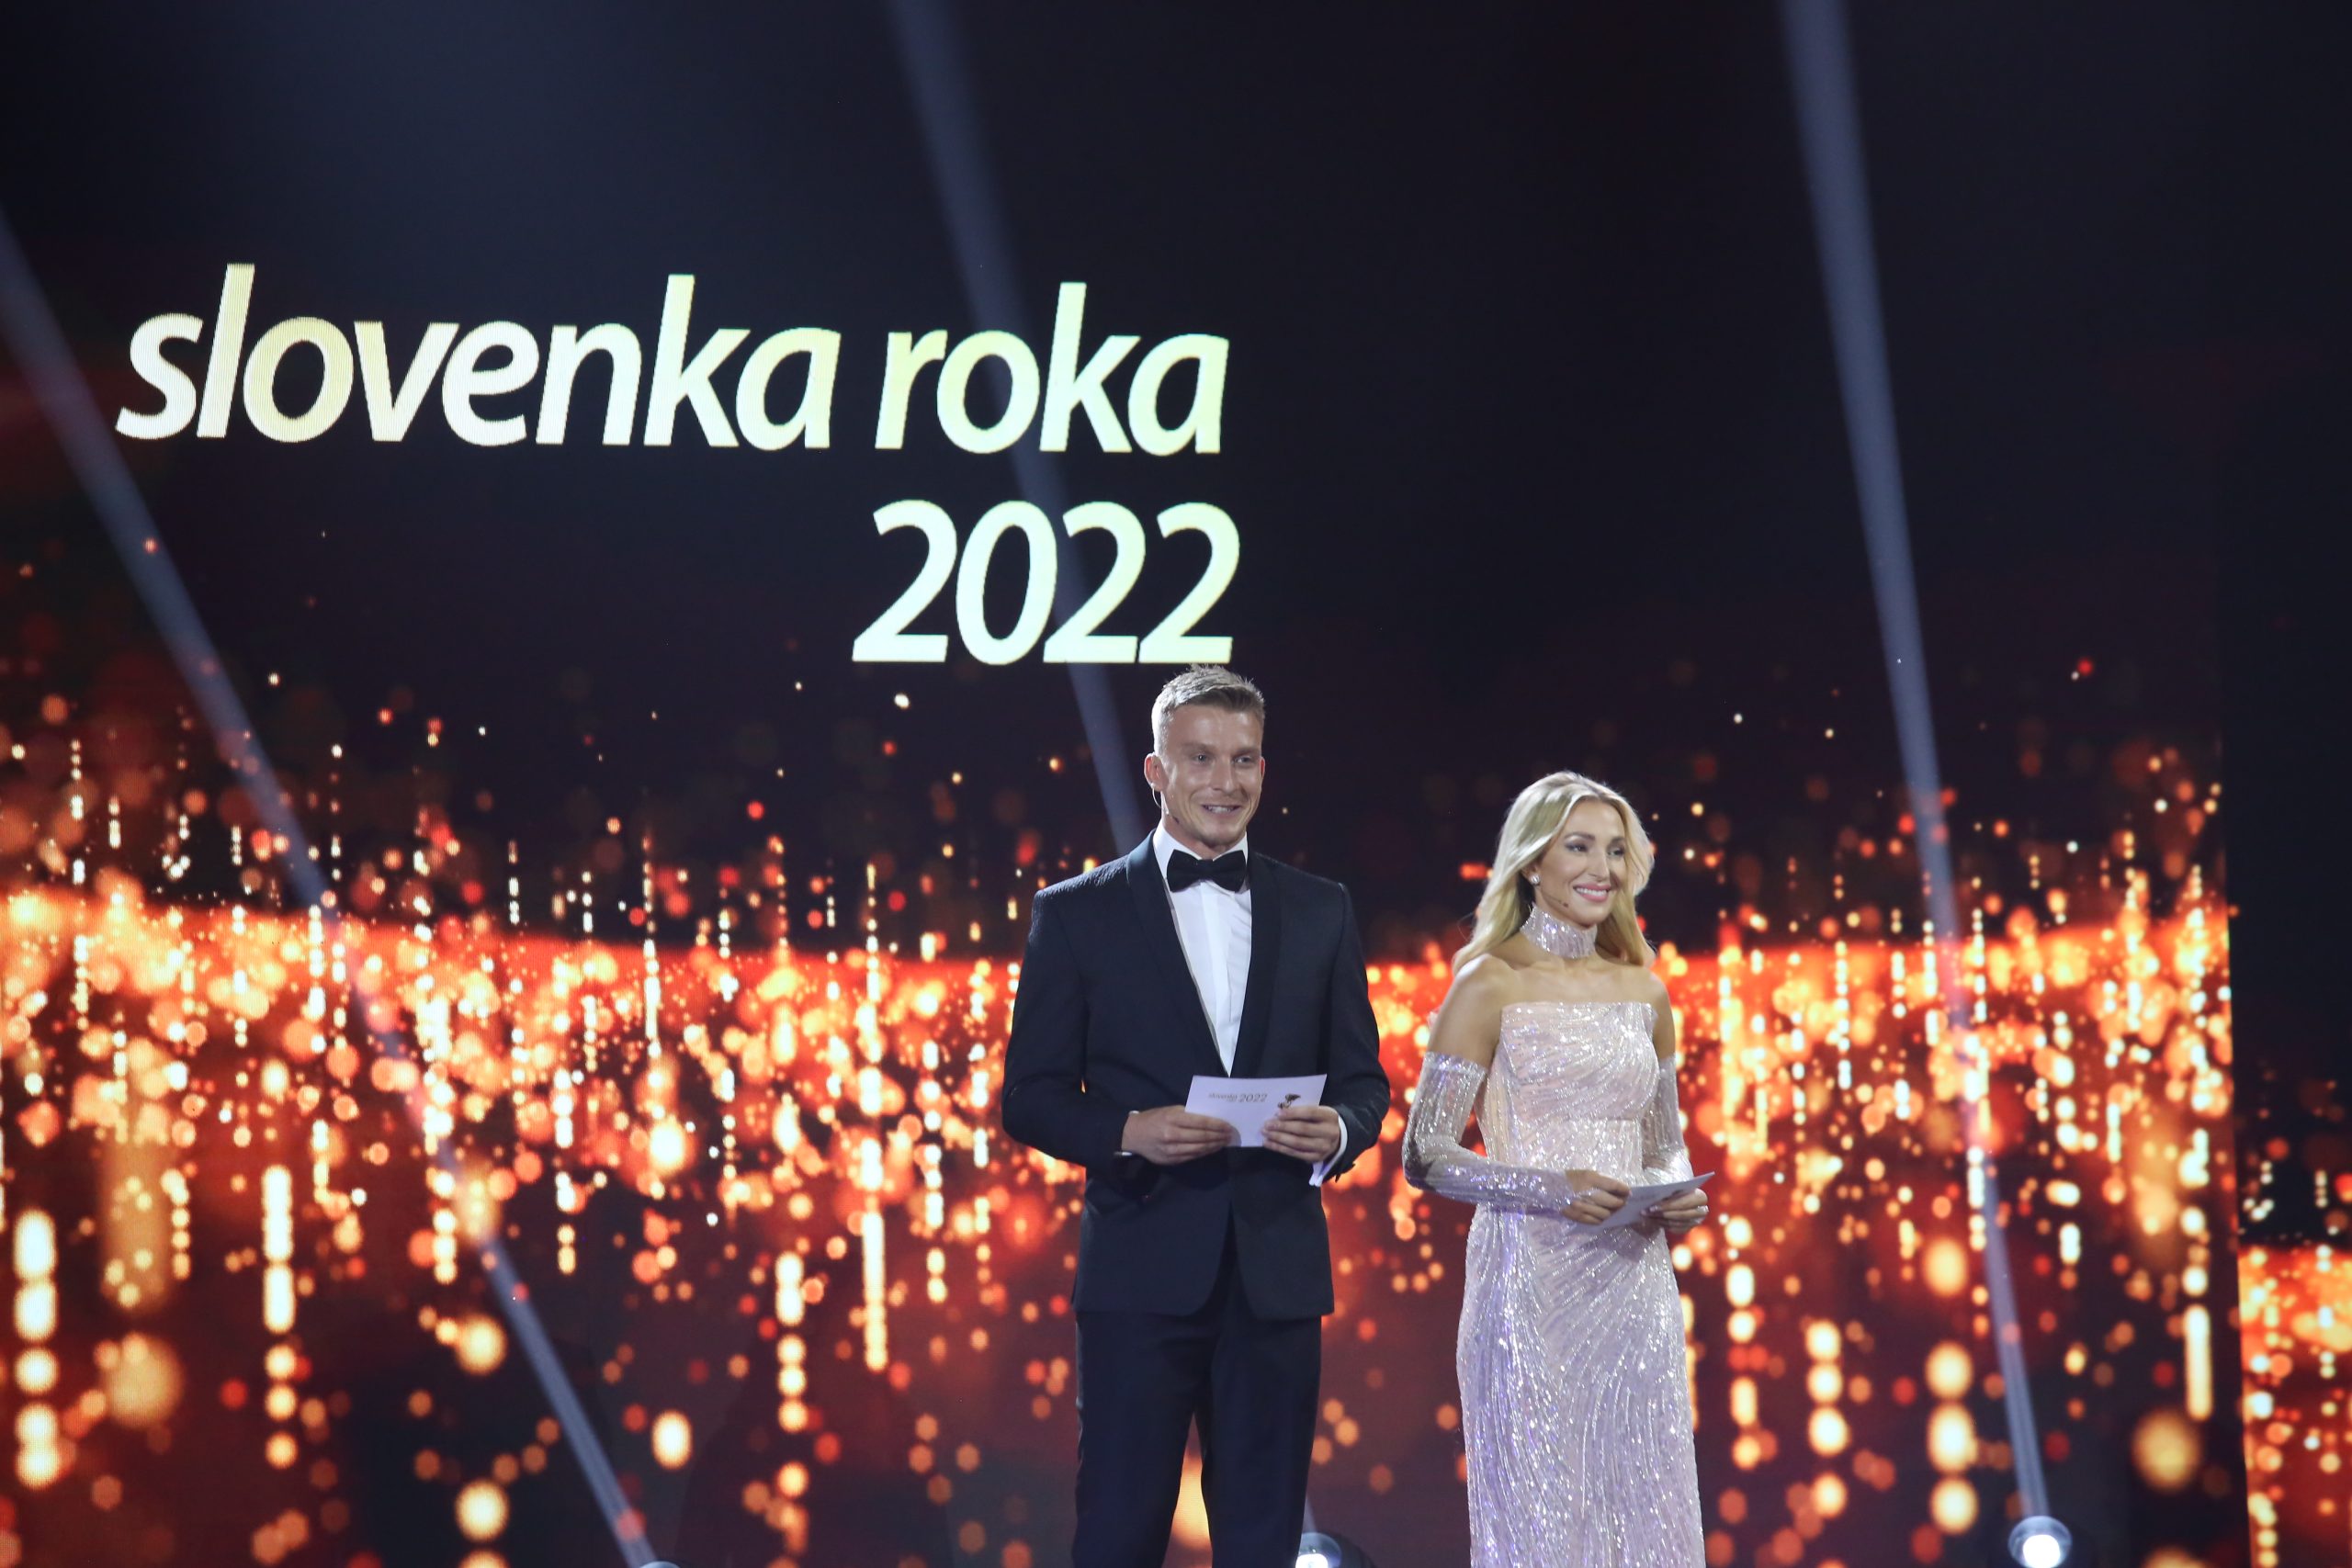 Slovenka roka 2022 - galavecer - 001